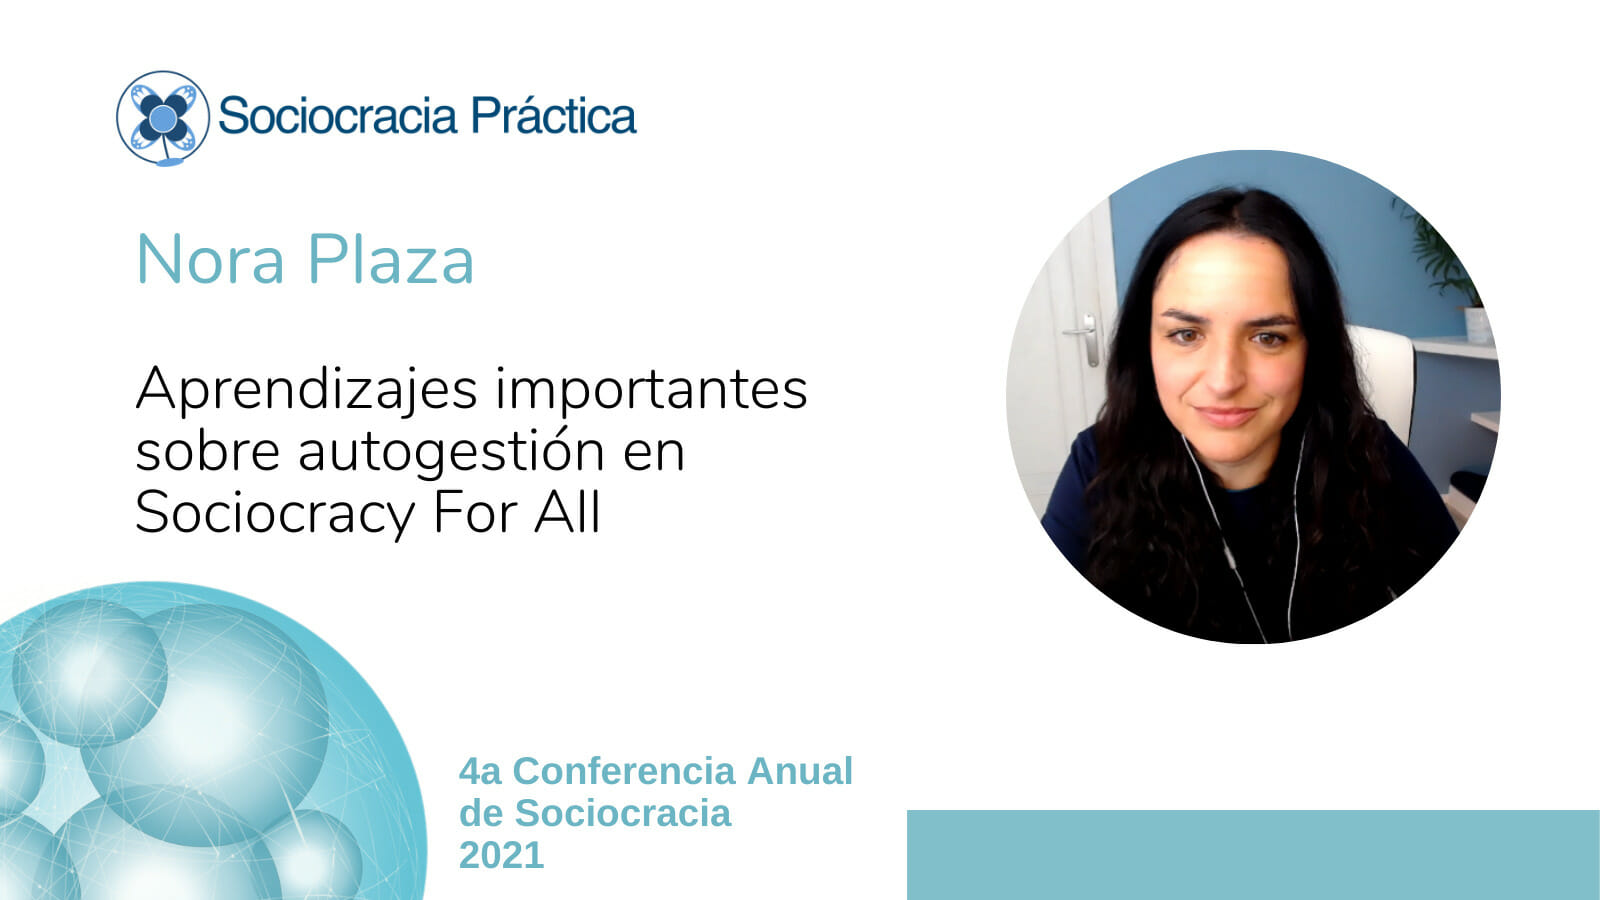 Aprendizajes importantes sobre autogestión en Sociocracy for All (Nora Plaza)